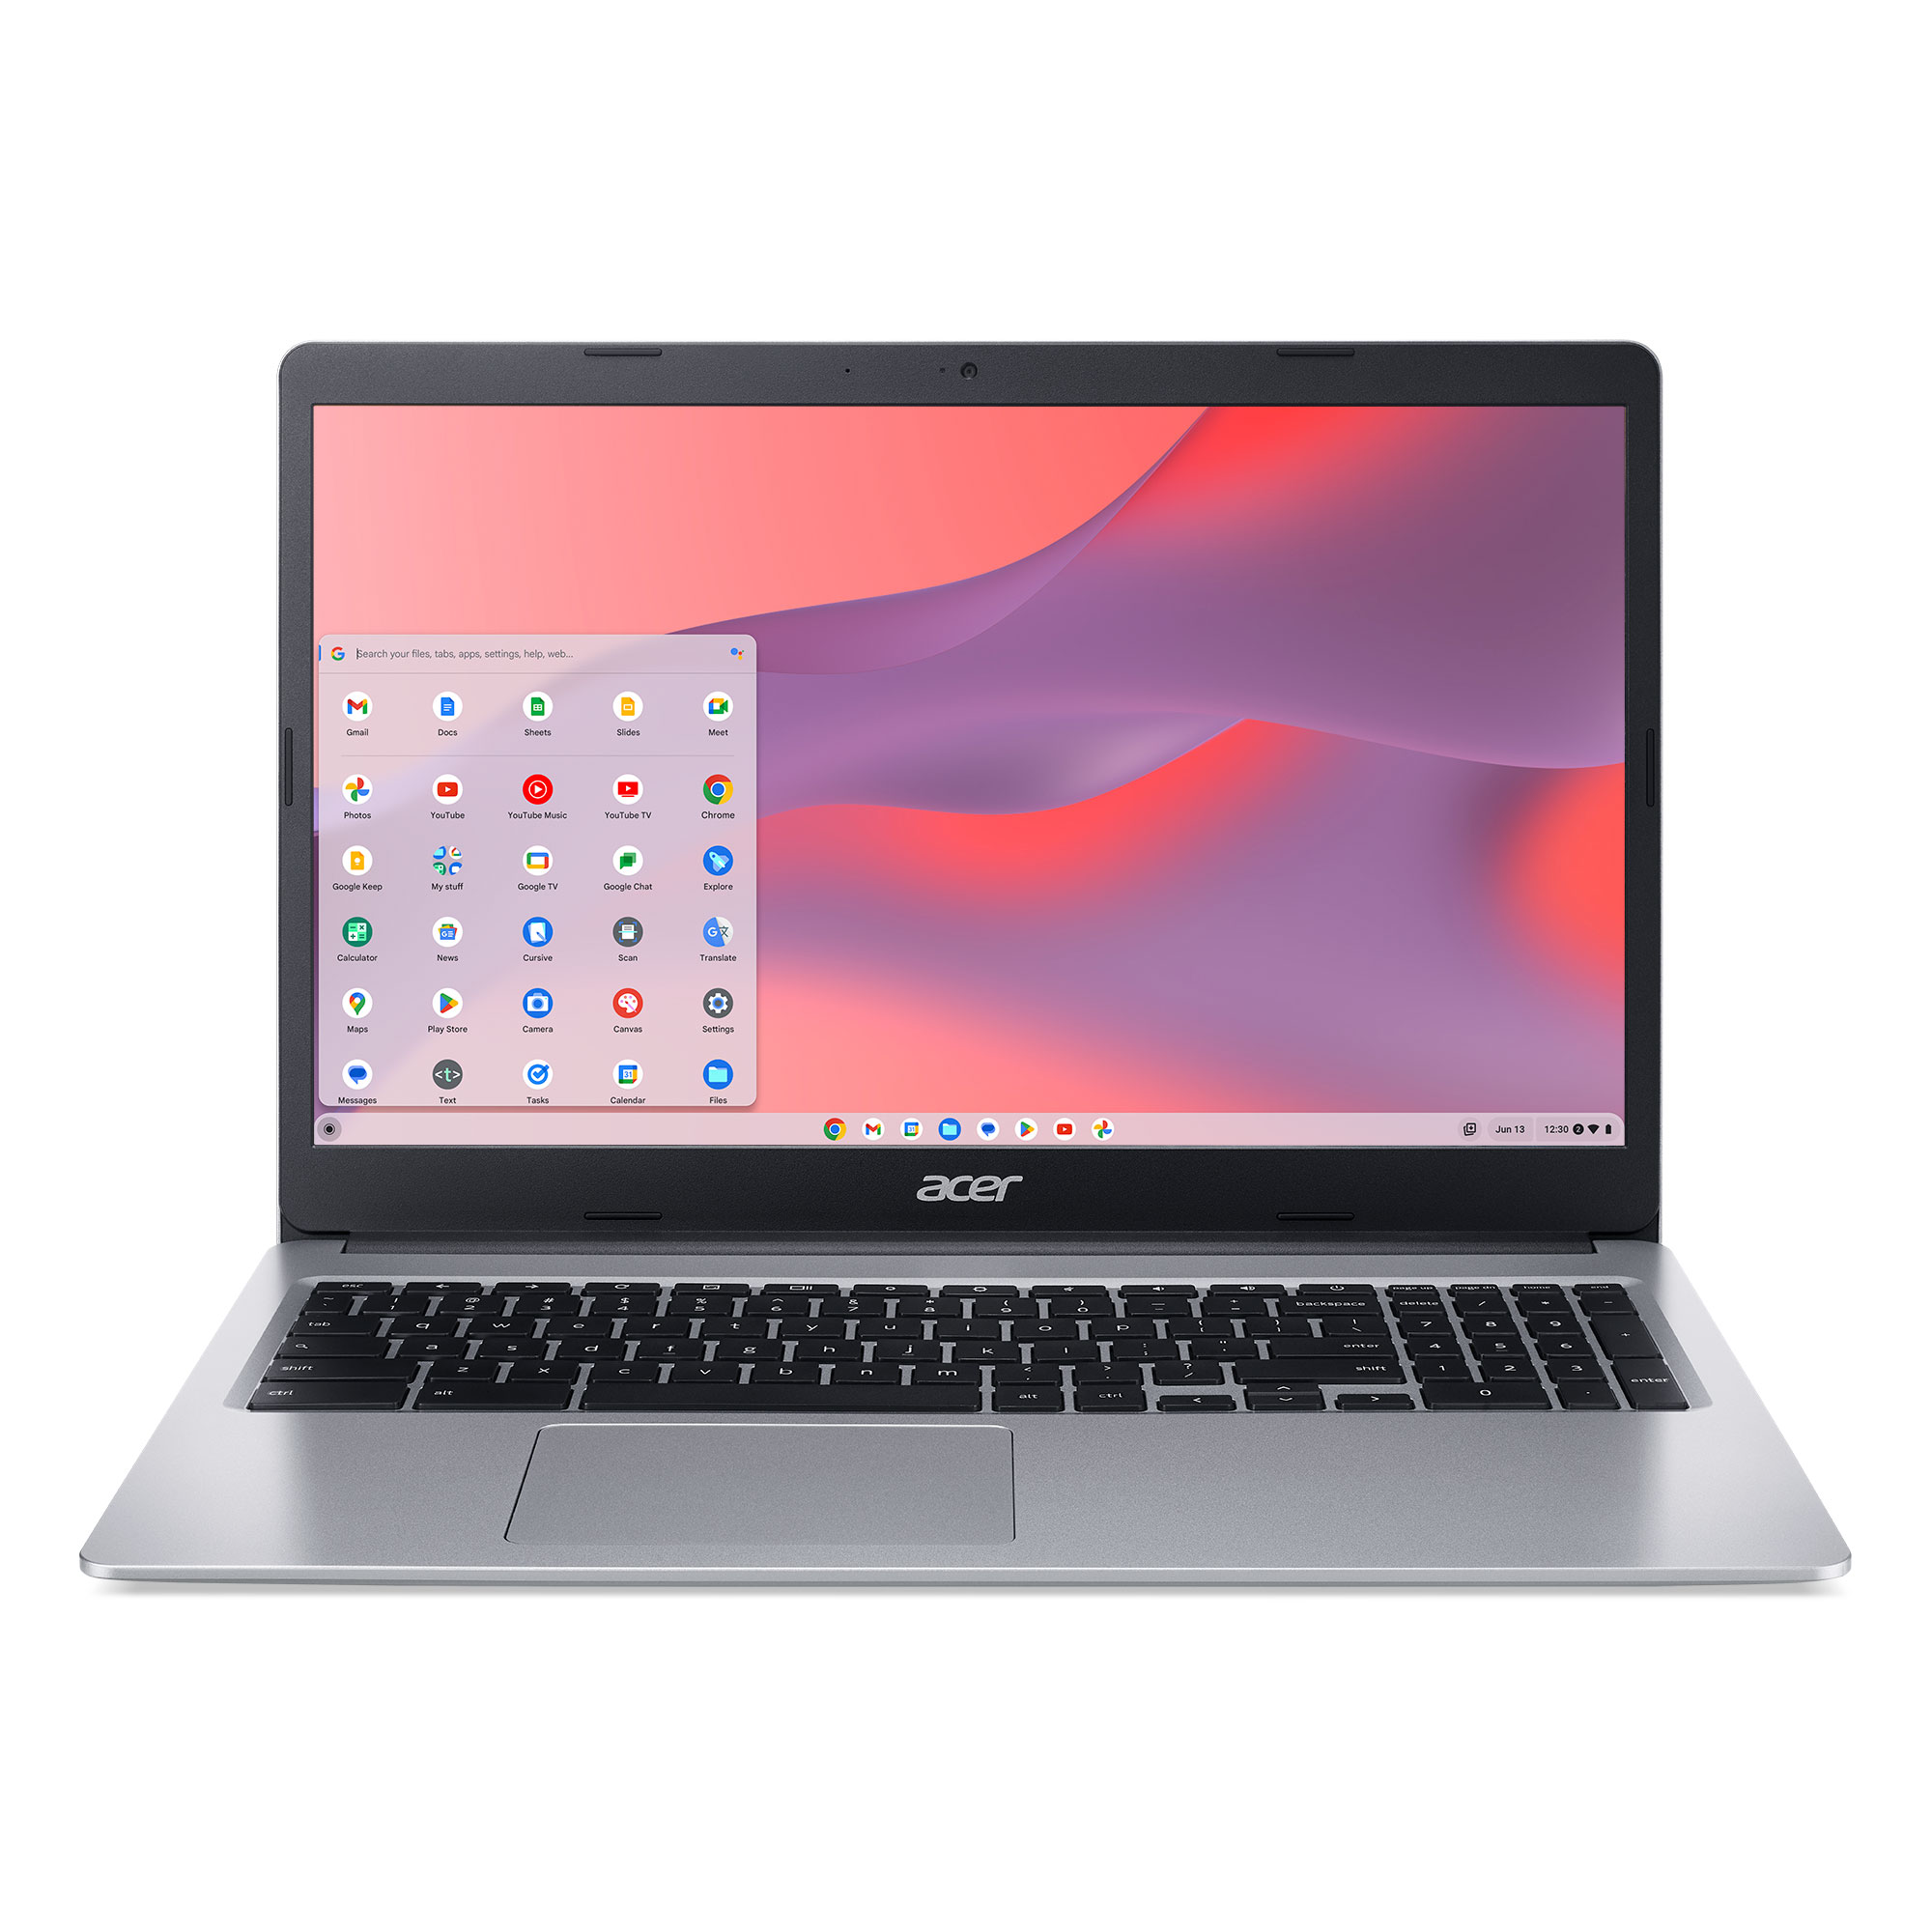 Acer Chromebook 315 (2019), 15.6" HD, Intel Celeron N4020, 4GB RAM, 64GB eMMC, Silver, CB315-3H-C19A - image 1 of 5